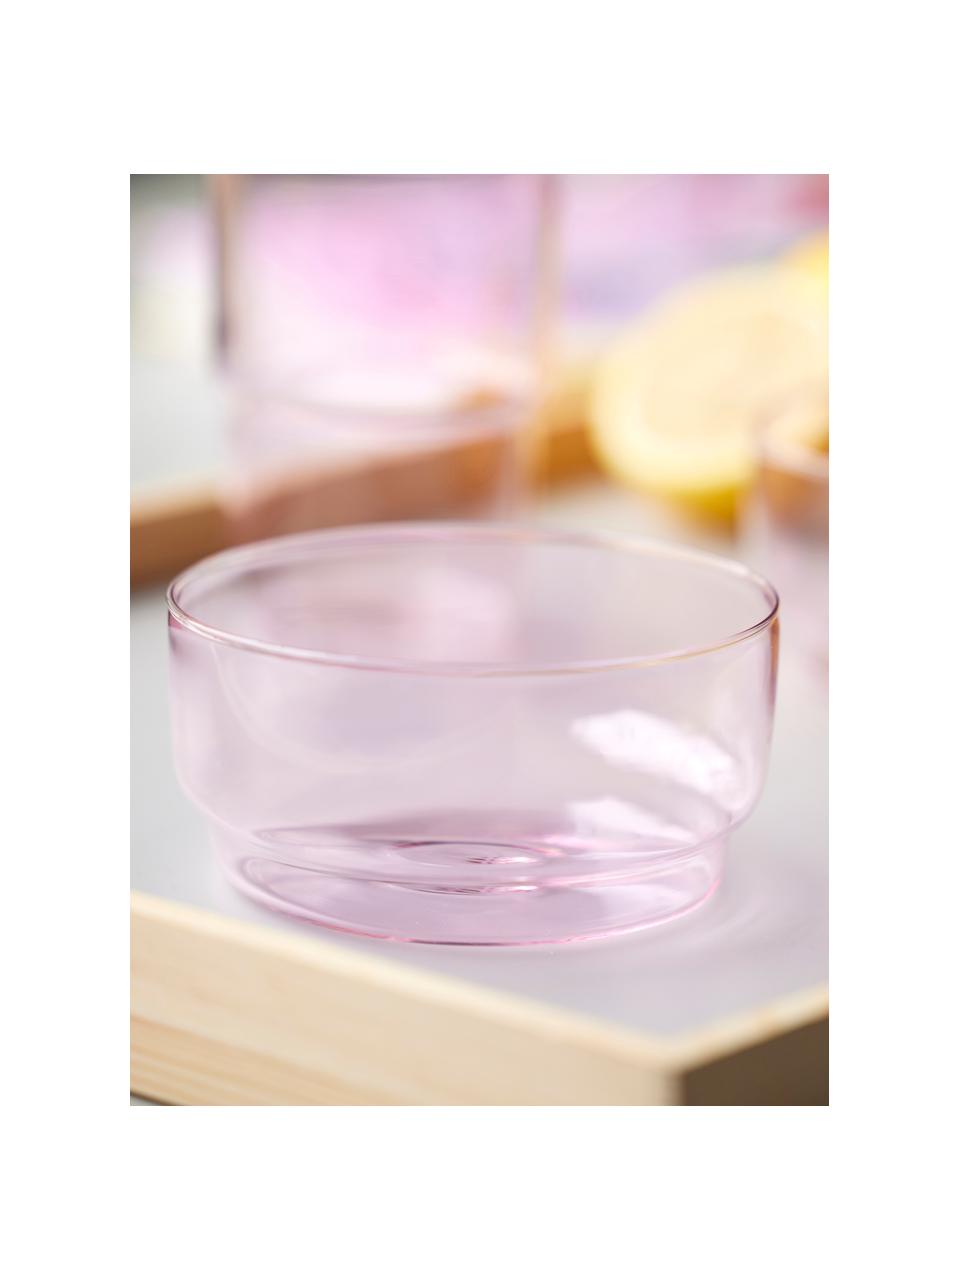 Ciotole in vetro borosilicato Torino 2 pz, Vetro borosilicato

Scopri la versatilità del vetro borosilicato per la tua casa! Il vetro borosilicato è un materiale di alta qualità, affidabile e robusto. Si caratterizza per la sua eccezionale resistenza al calore ed è quindi ideale per il vostro tè o caffè caldo. Rispetto al vetro convenzionale, il vetro borosilicato è più resistente alle rotture e alle crepe ed è quindi un compagno sicuro nella tua casa., Rosa chiaro trasparente, Ø 12 x Alt. 6 cm